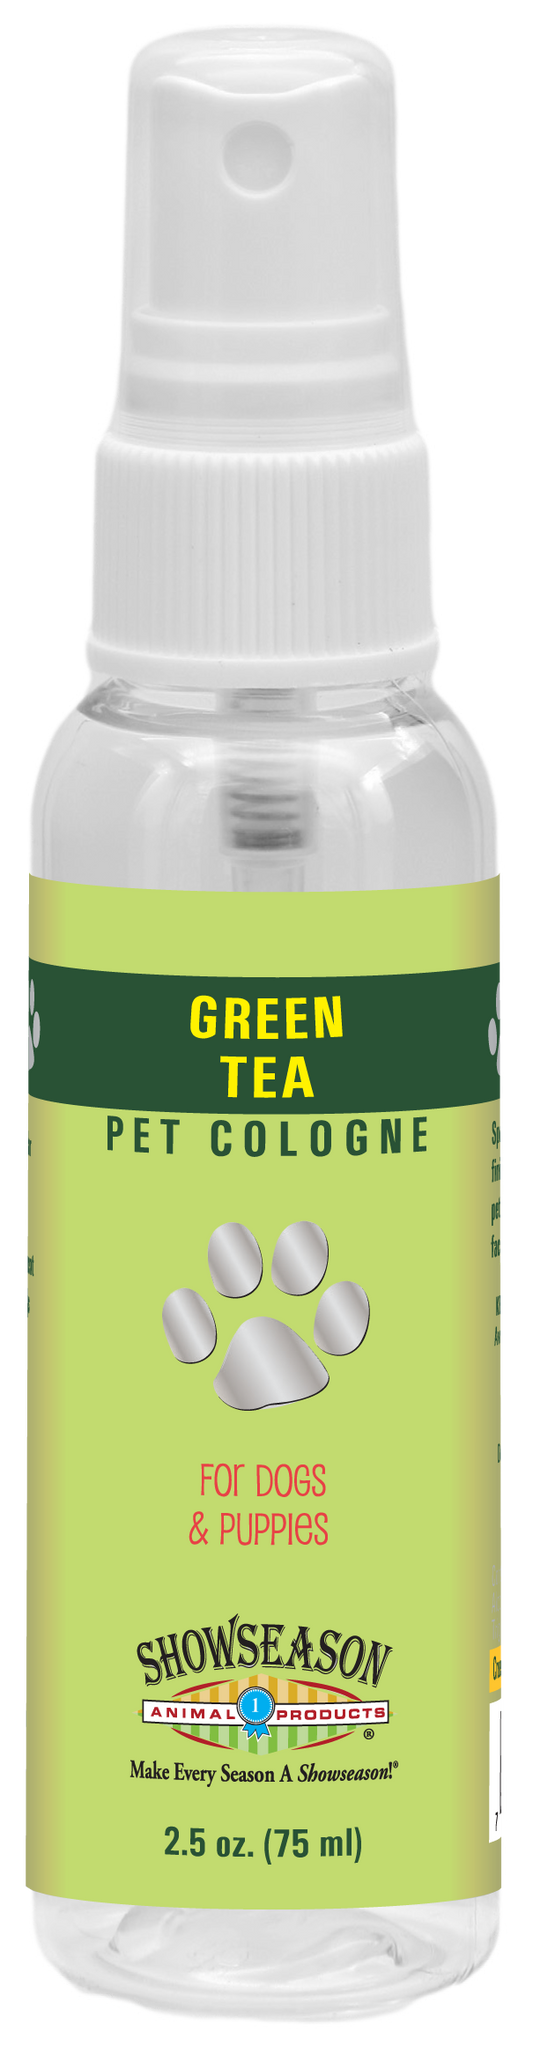 Green Tea Pet Cologne | Showseason®